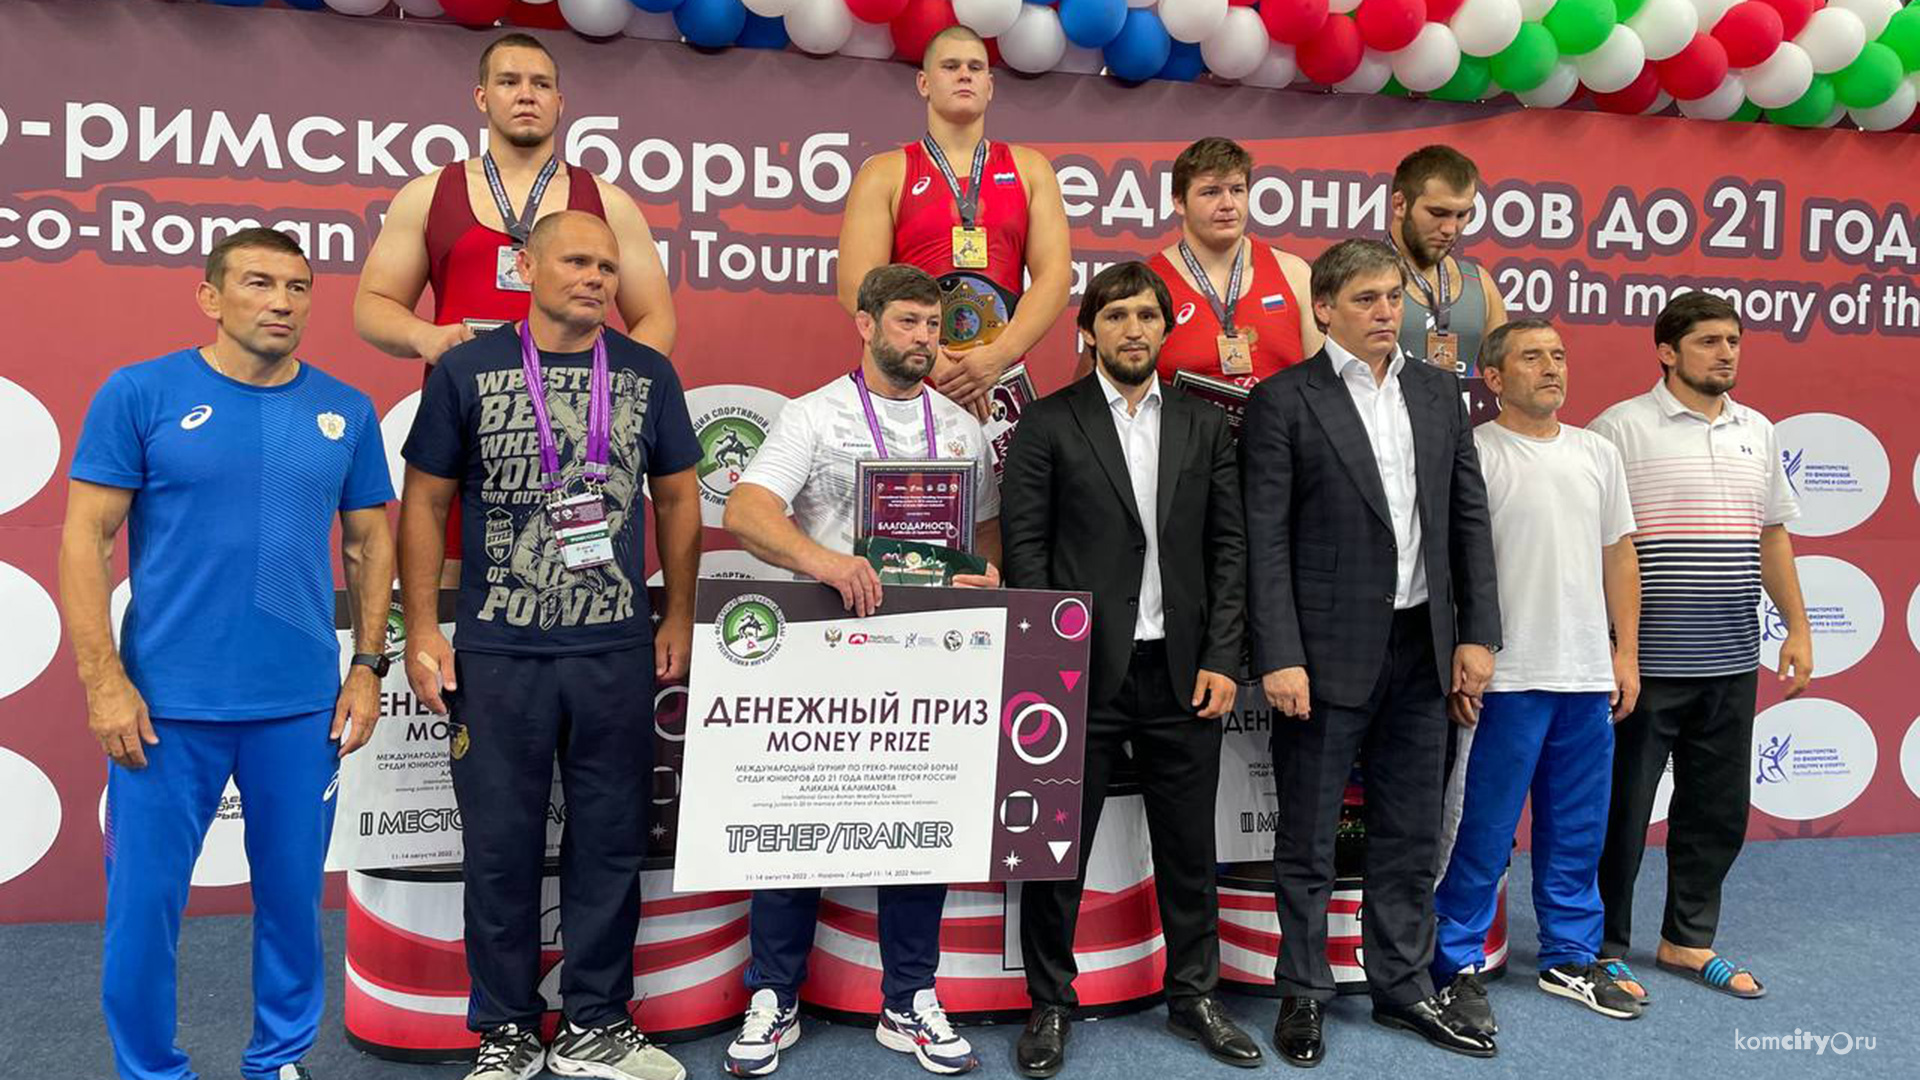 Борец из Комсомольска-на-Амуре выиграл «серебро» международного турнира в Ингушетии